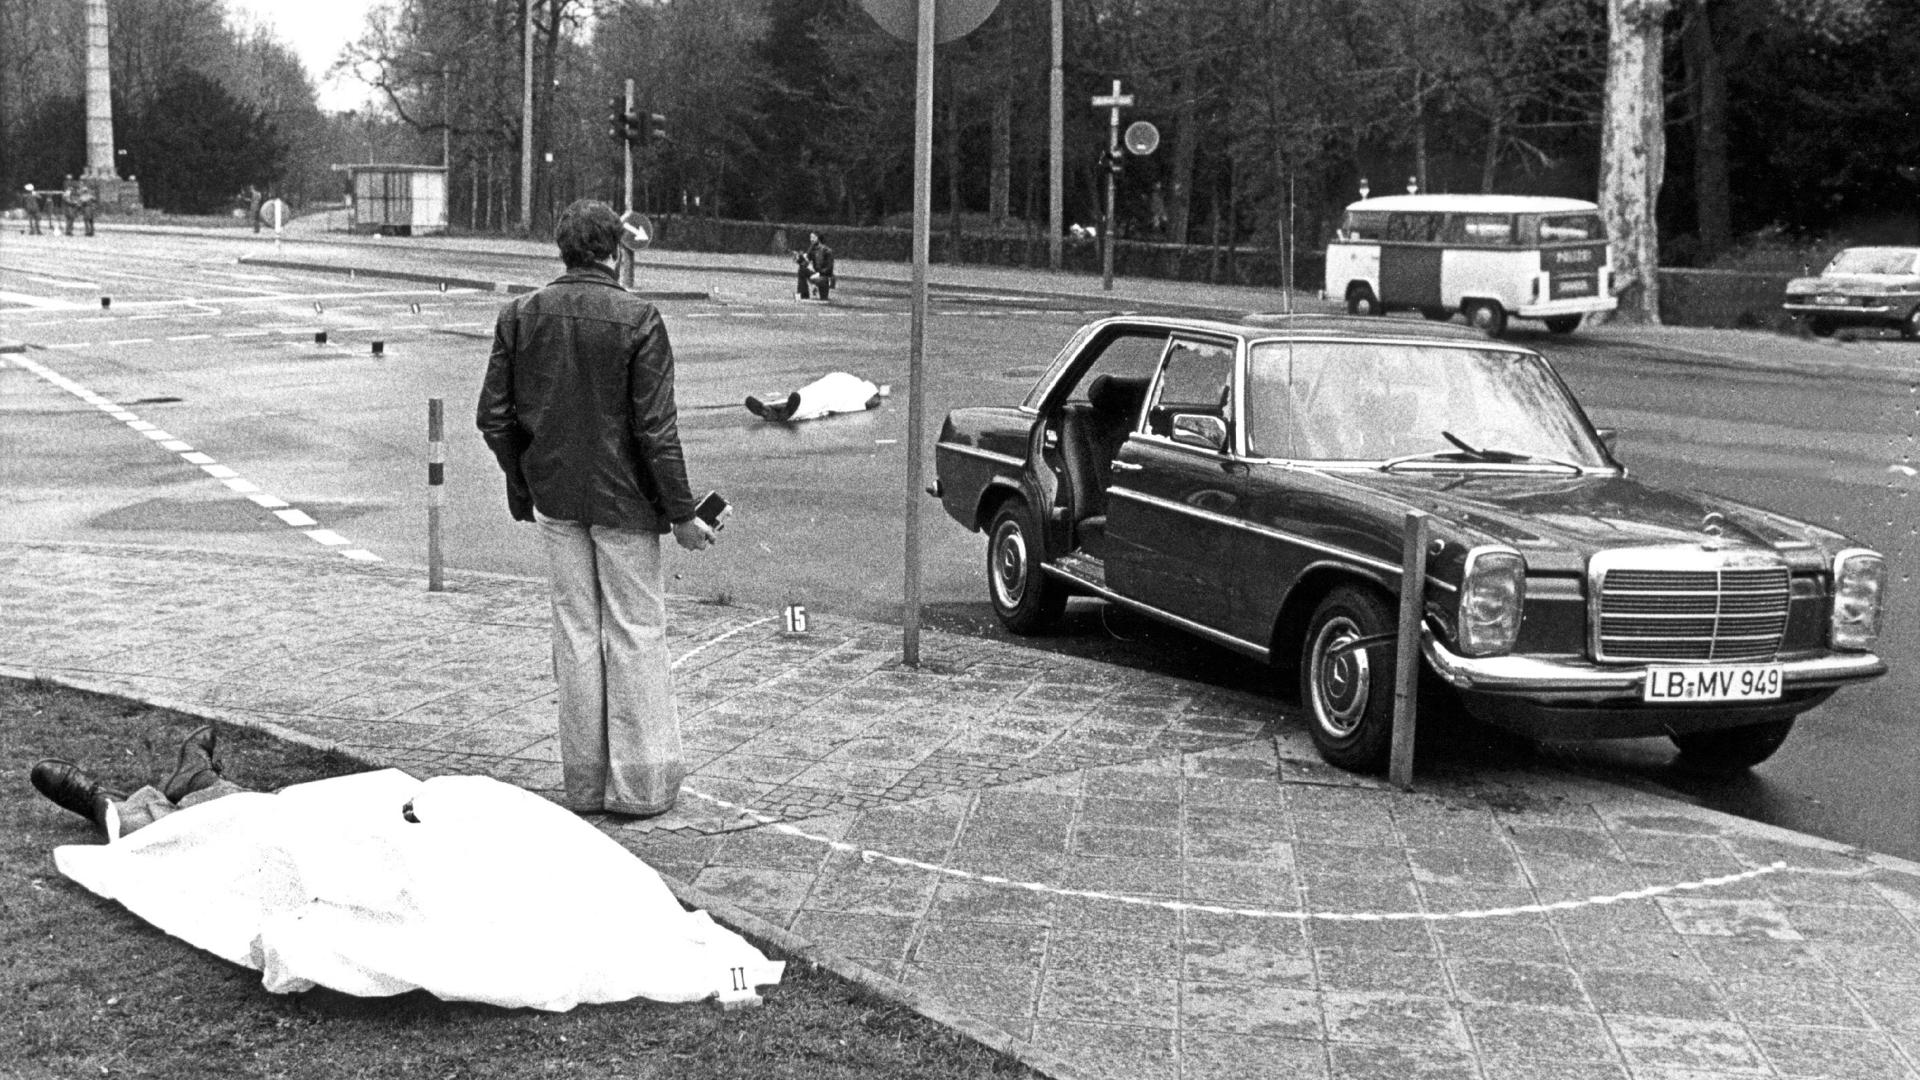 ARCHIV - Die Leichen von Generalbundesanwalt Siegfried Buback (vorne links) und seines Fahrers liegen nach den Todesschüssen am Tatort in Karlsruhe, rechts der Dienstwagen Bubacks (Archivfoto vom 07.04.1977). 